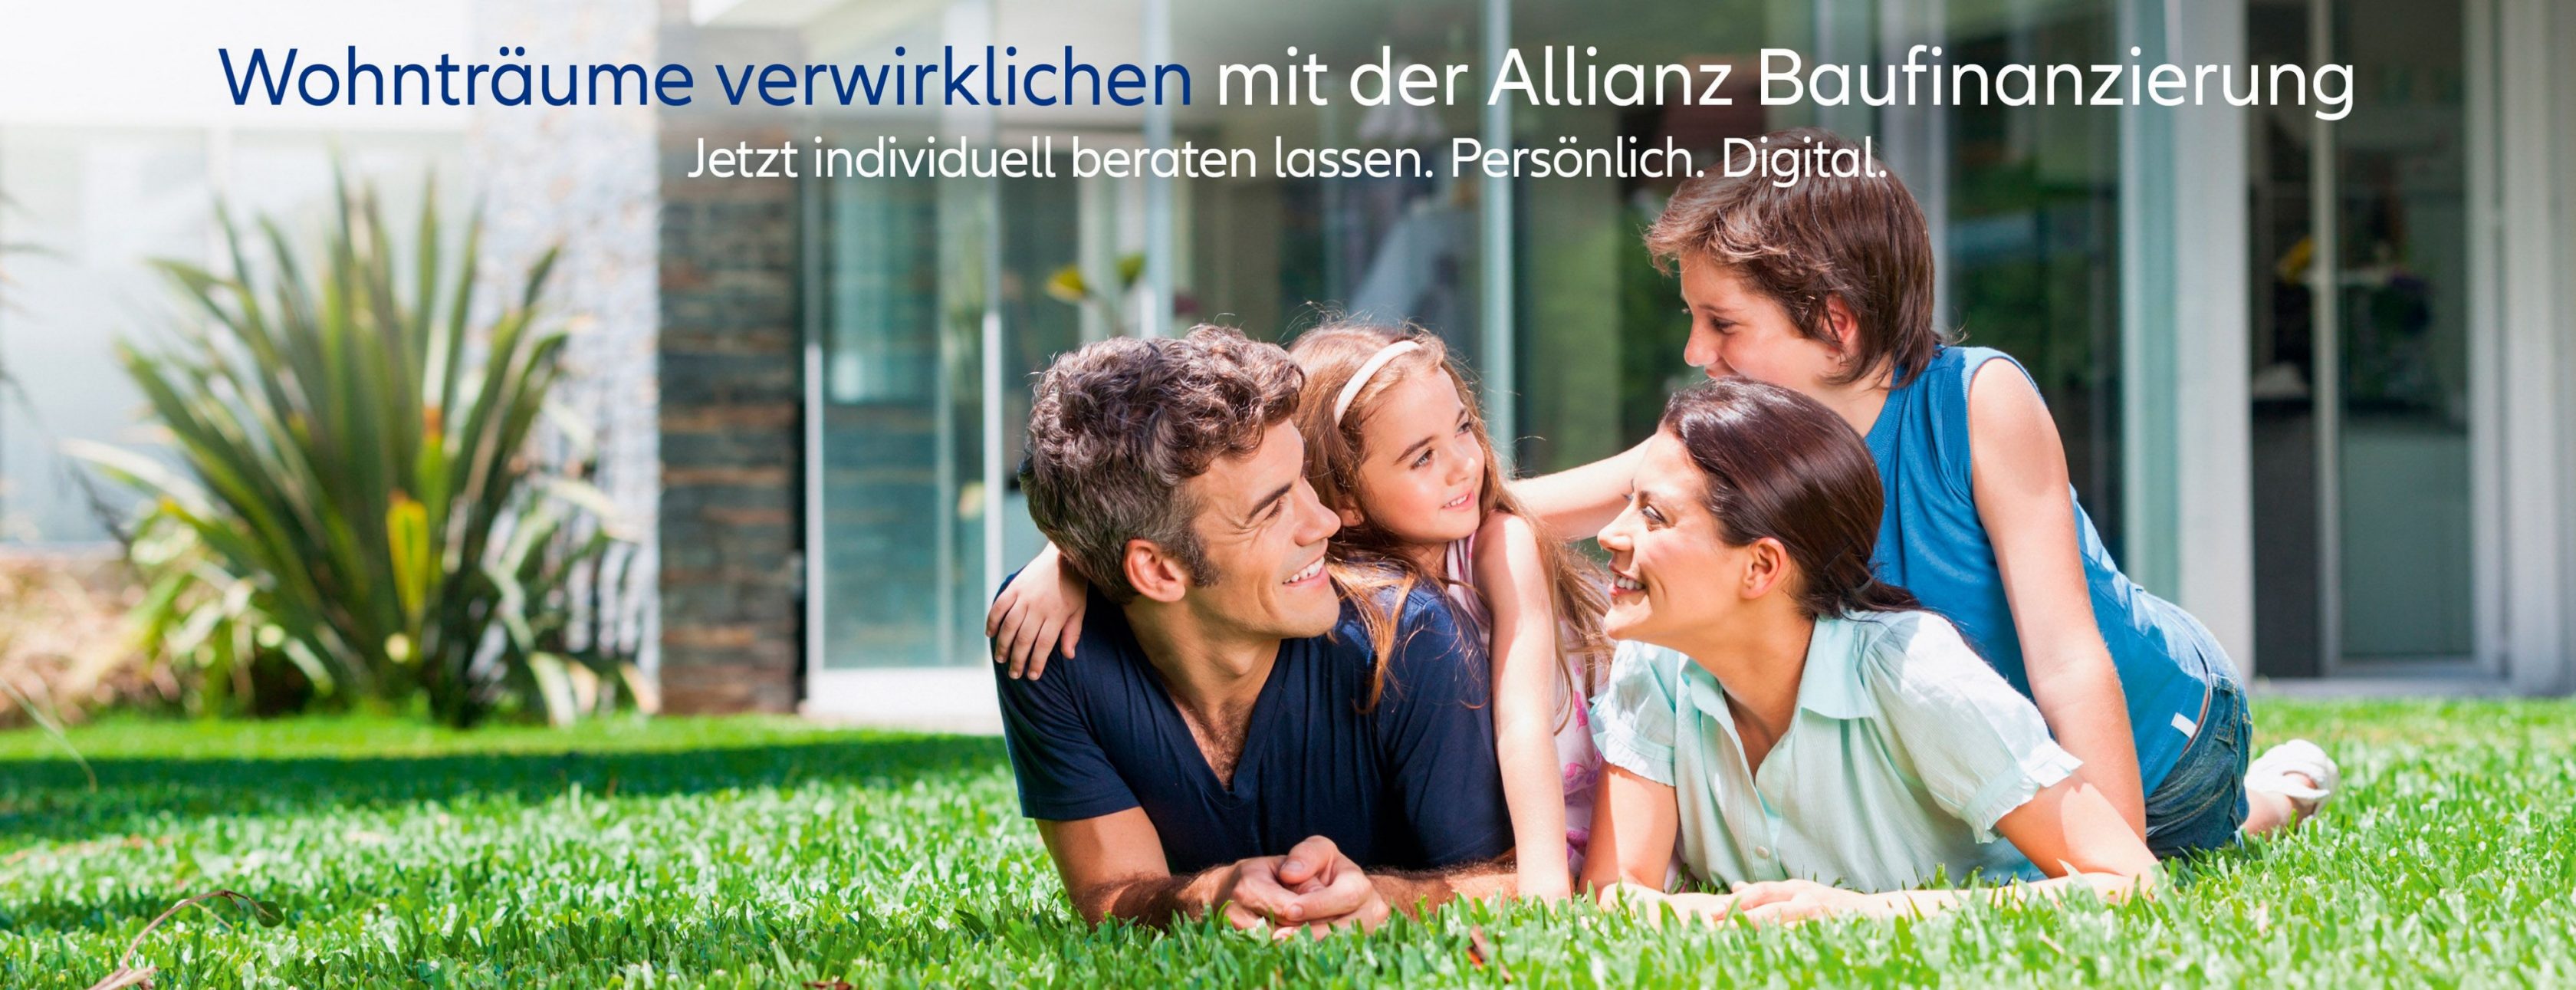 Allianz Versicherung Kerner OHG Sulz am Neckar - #Allianz  #kernerOHG #SulzamNeckar